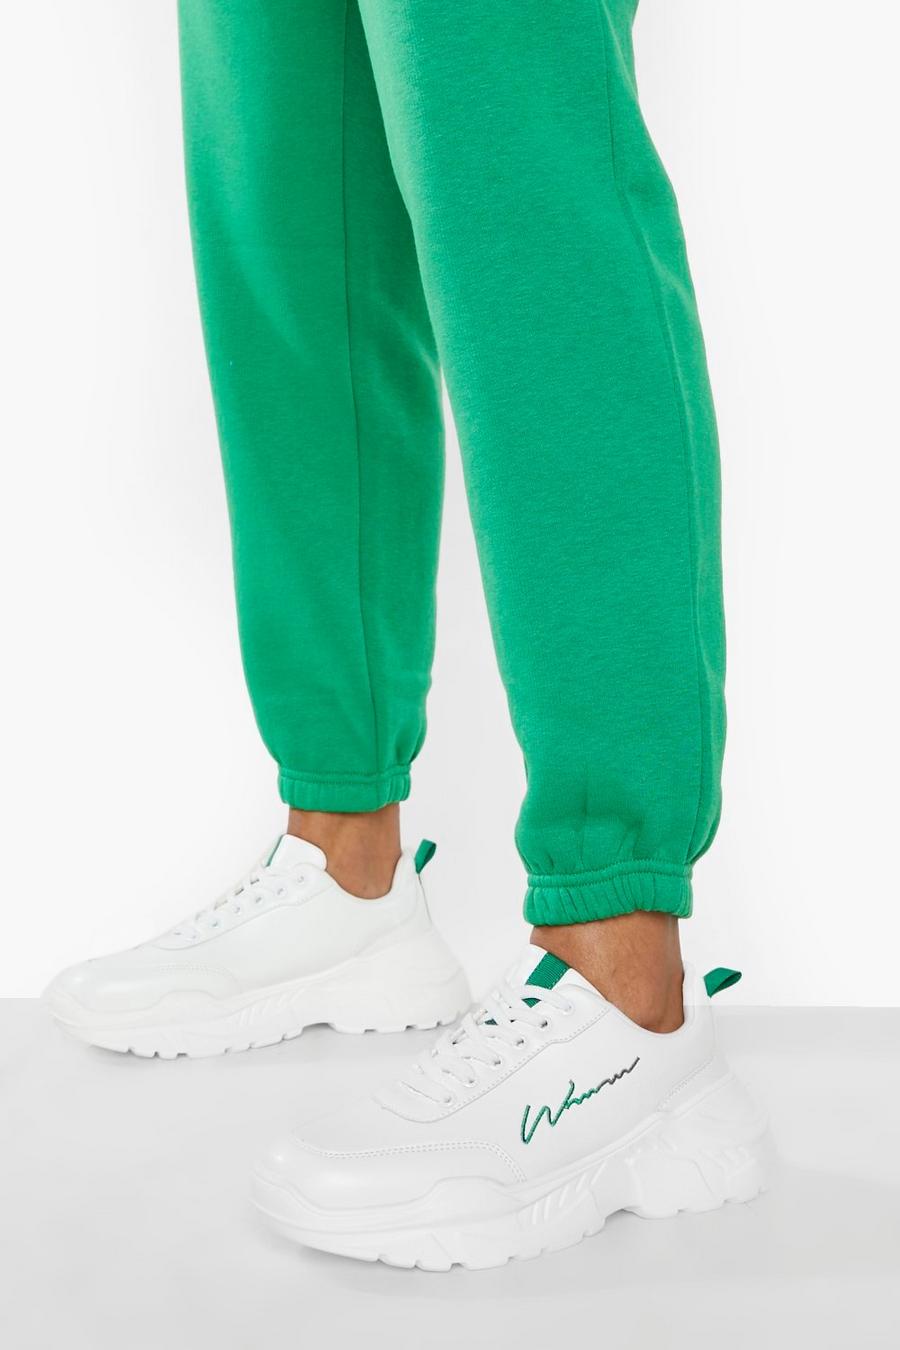 Zapatillas deportivas con firma Woman gruesas, Green verde